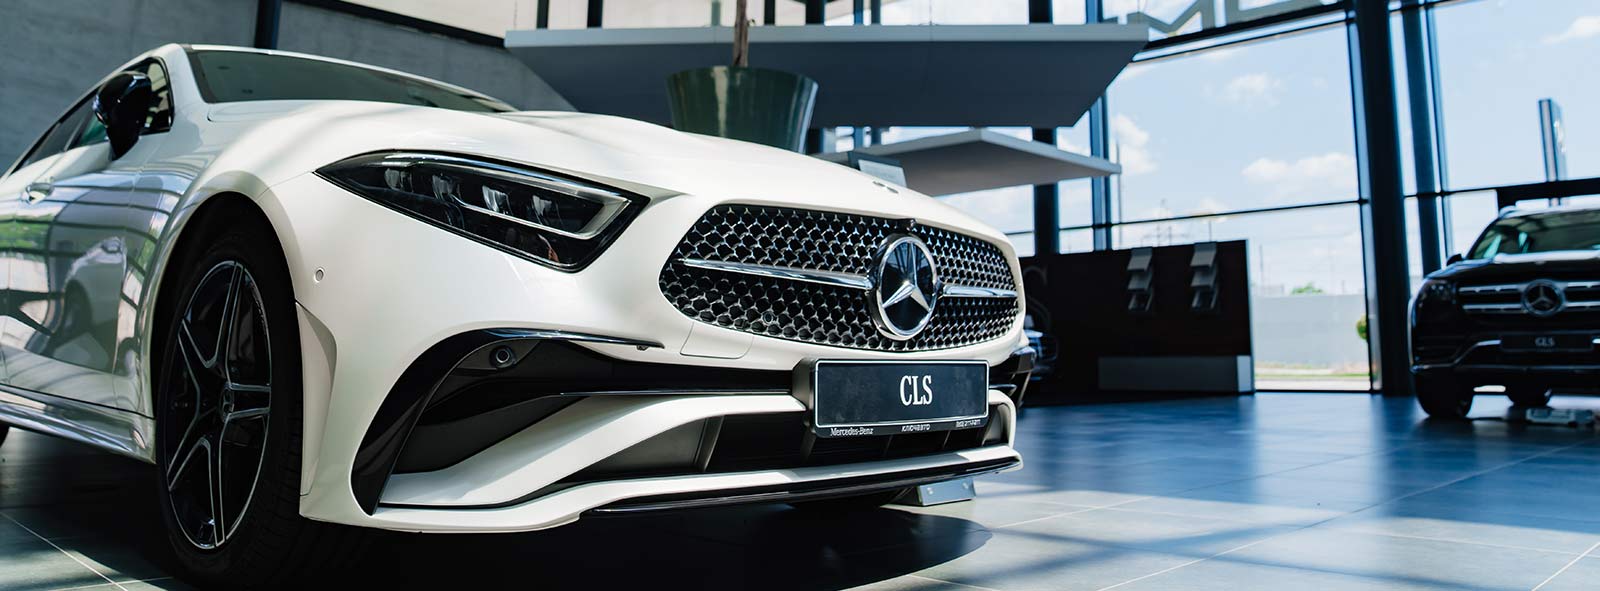 Technischer Hintergrund des Mercedes Rückrufs